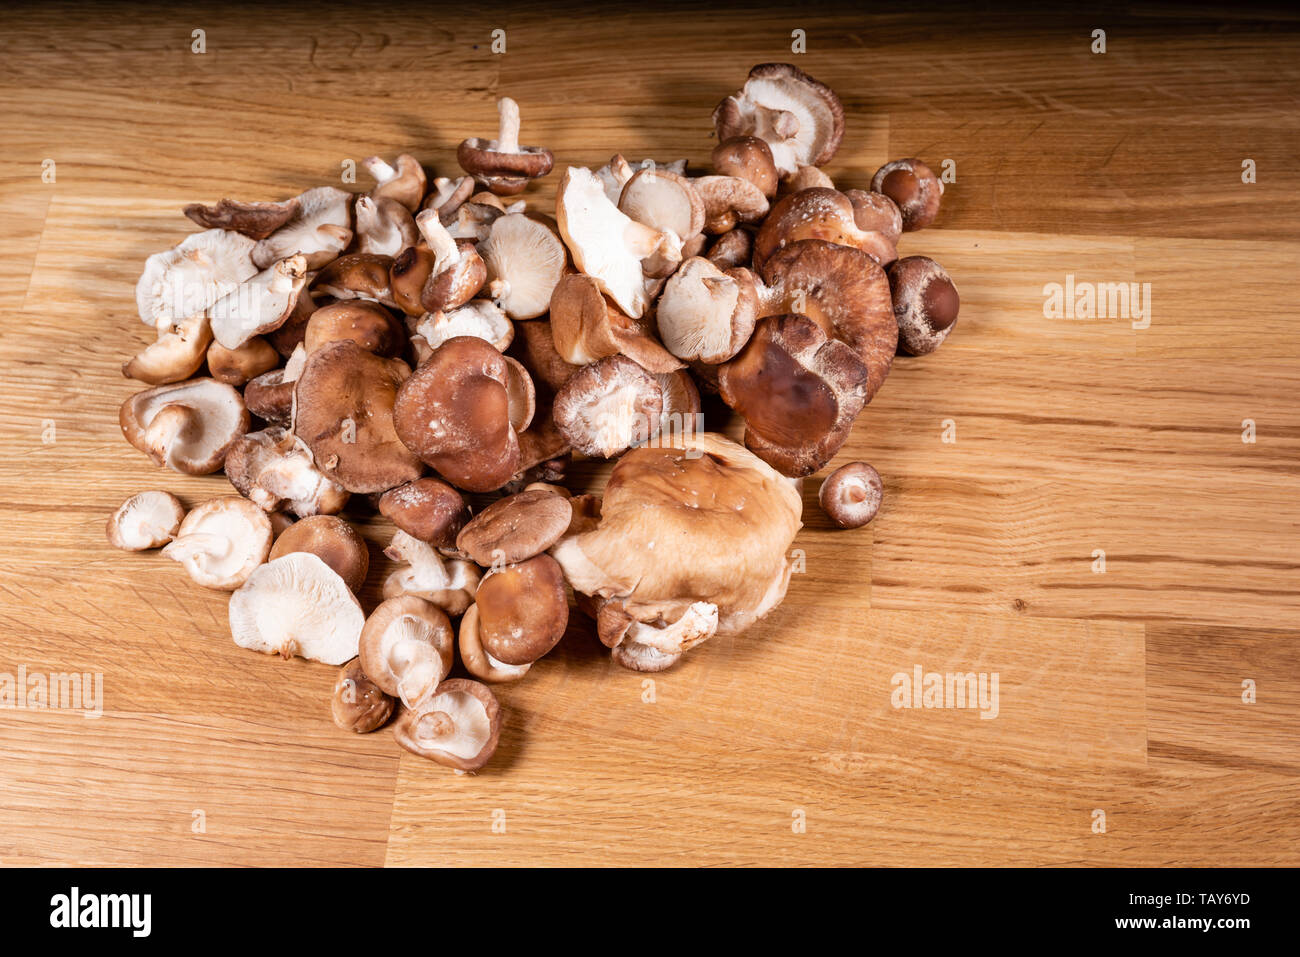 Fresco di funghi cremini pronto per la preparazione su una tabella Foto Stock